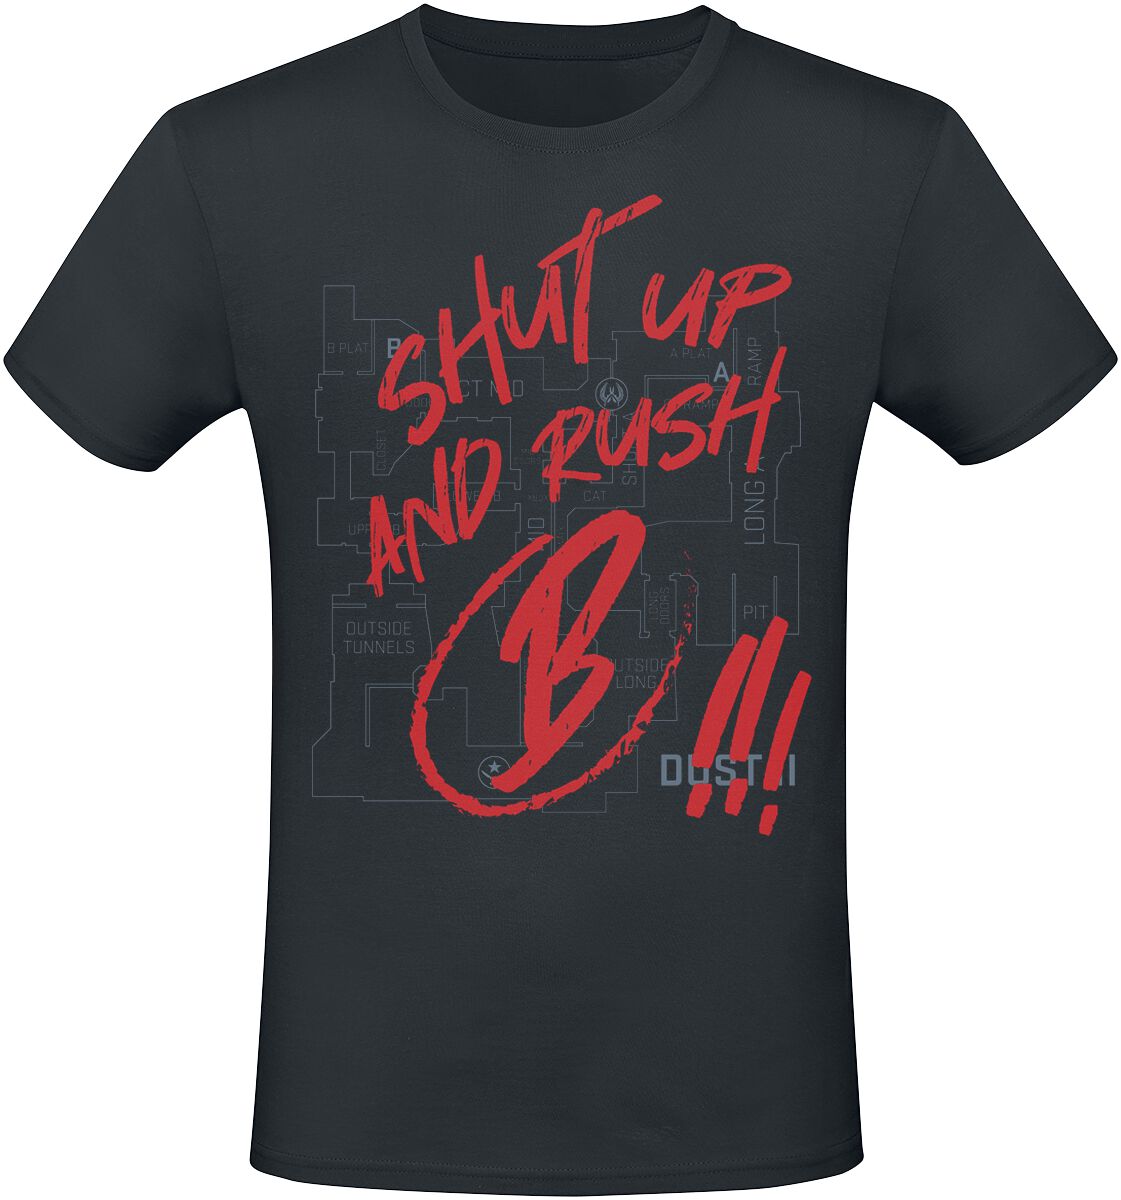 Counter-Strike - Gaming T-Shirt - 2 - Shut Up And Rush B !!! - S bis XXL - für Männer - Größe S - schwarz  - EMP exklusives Merchandise!